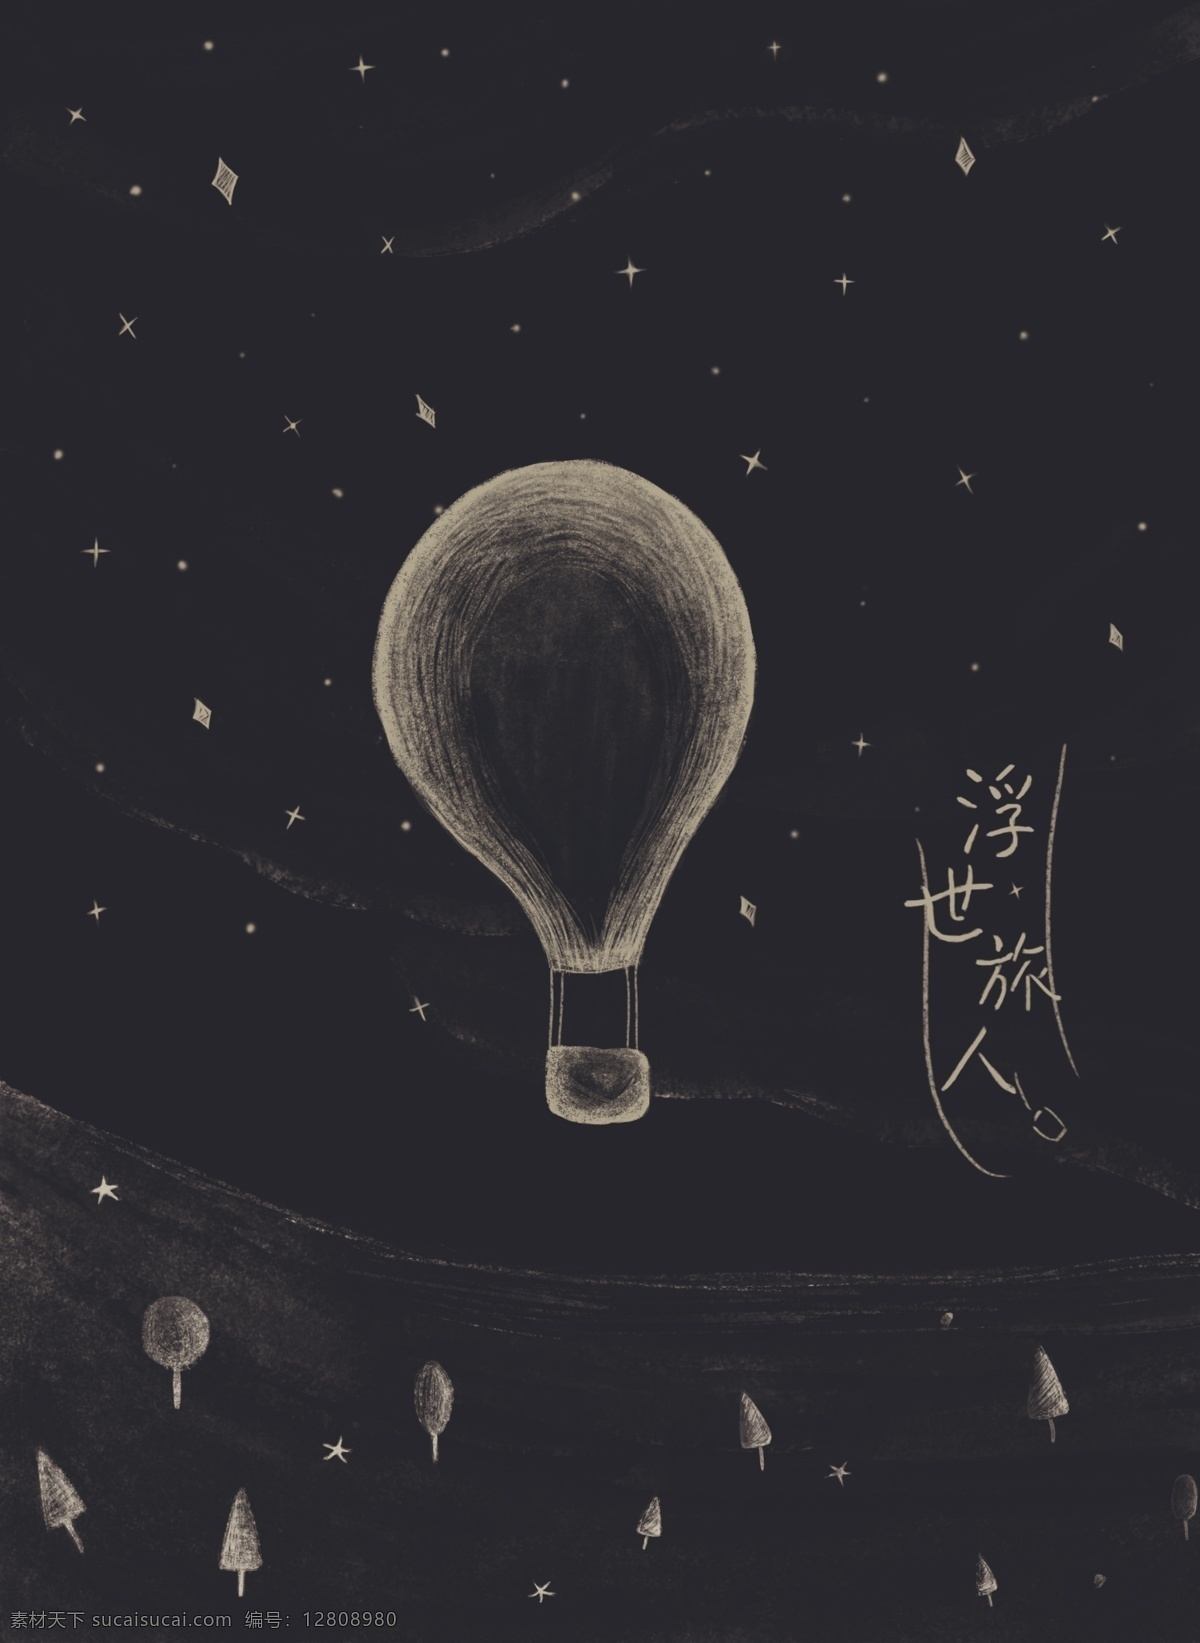 黑色 背景 热气球 插画 气球 夜晚 森林 唯美 清新 封面